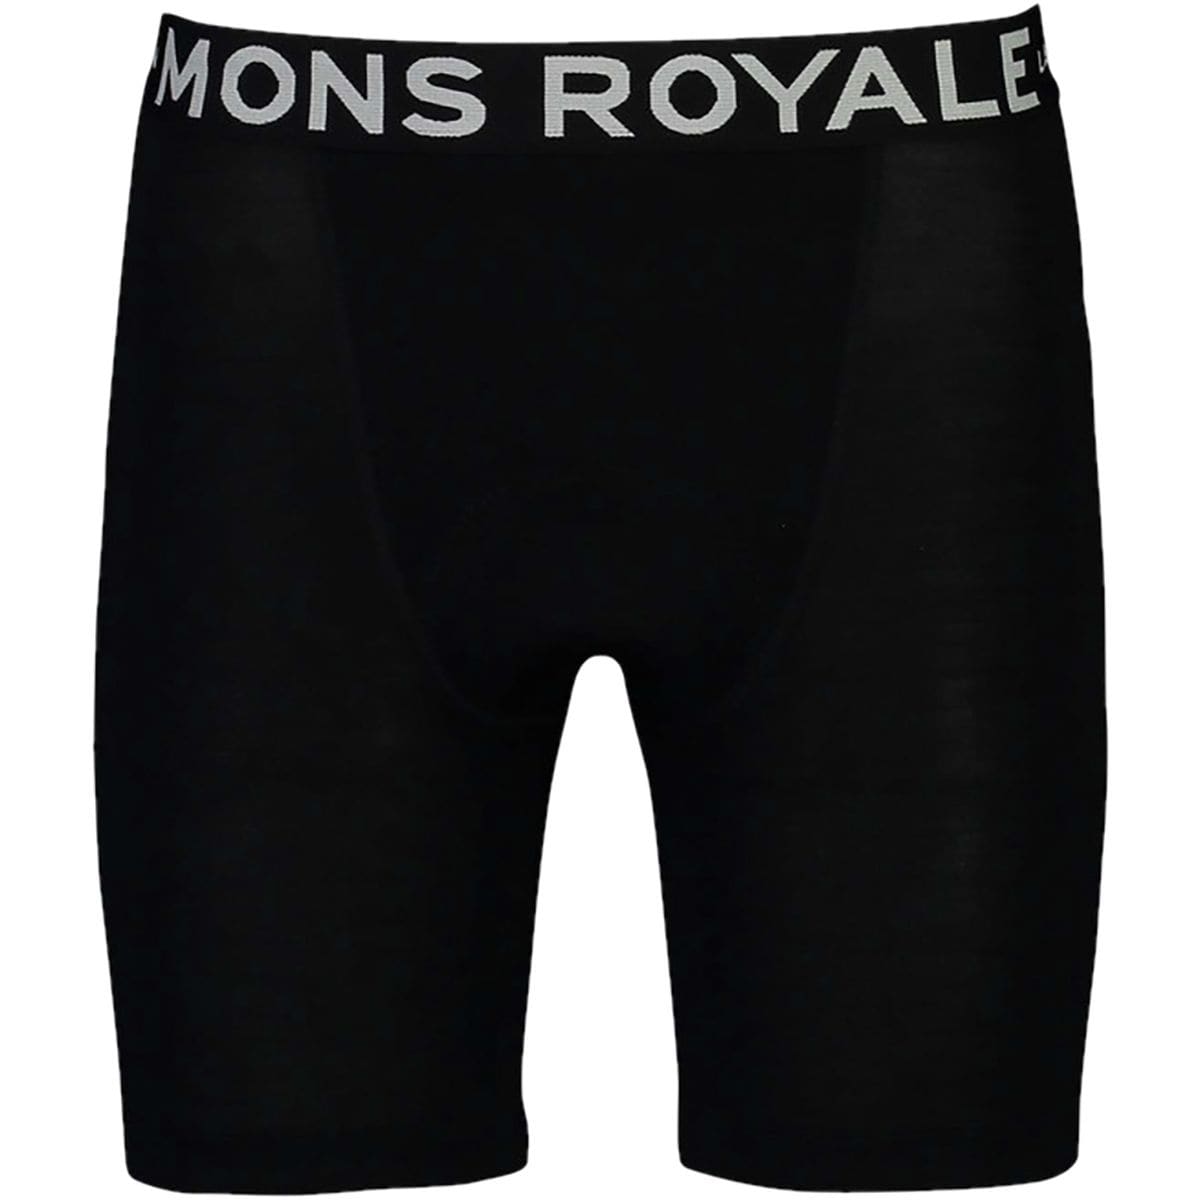 Mons Royale Momentum Chamois Short - Men's